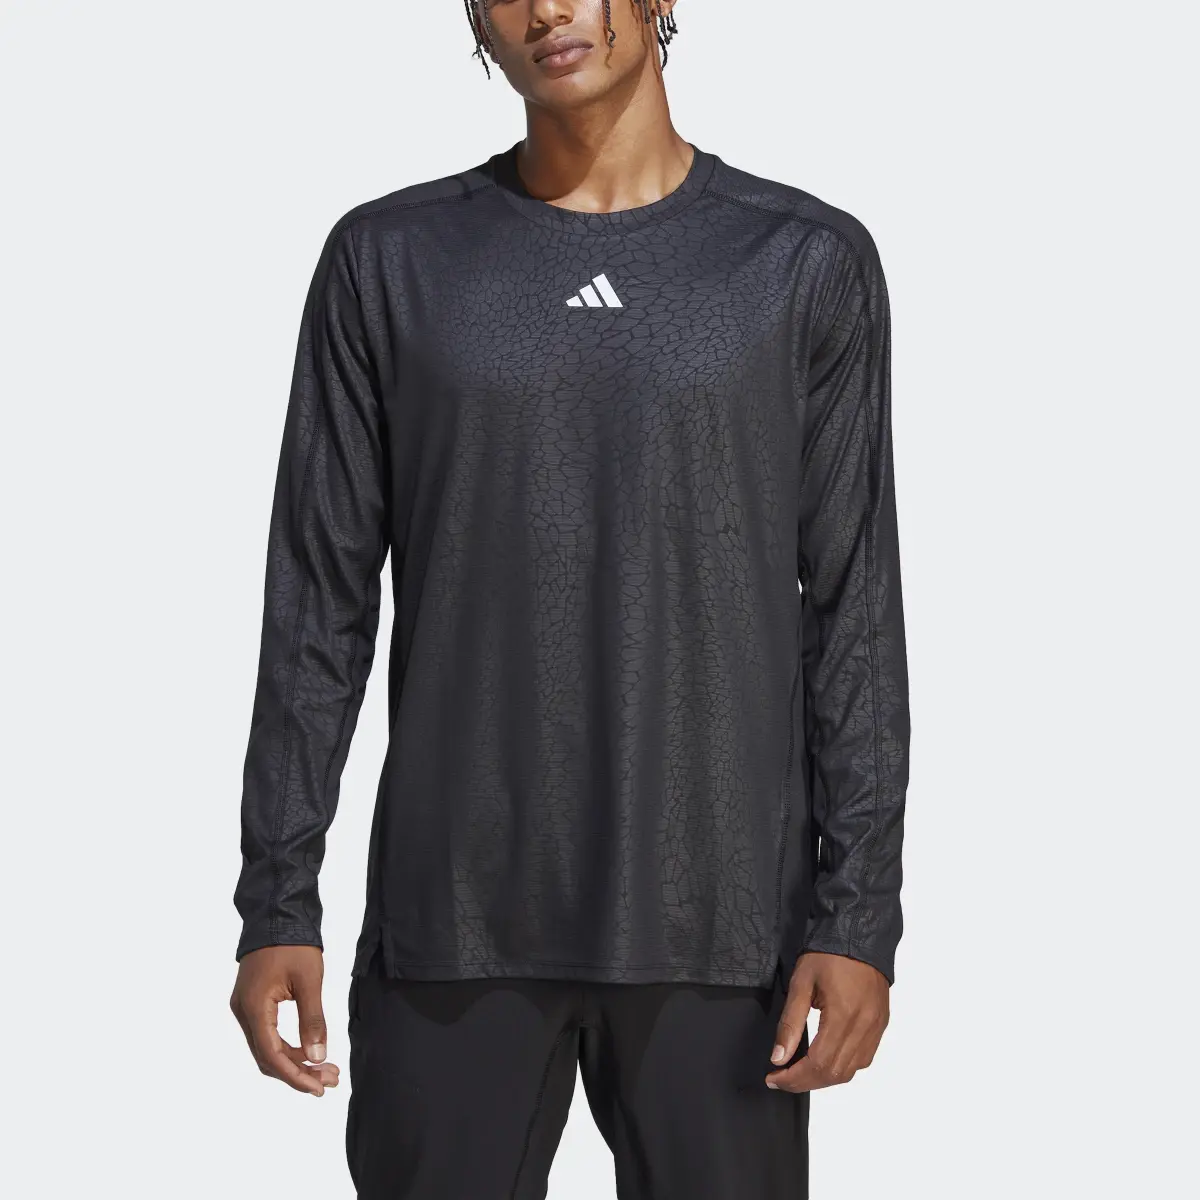 Adidas Workout PU Print Long-Sleeve Top. 1